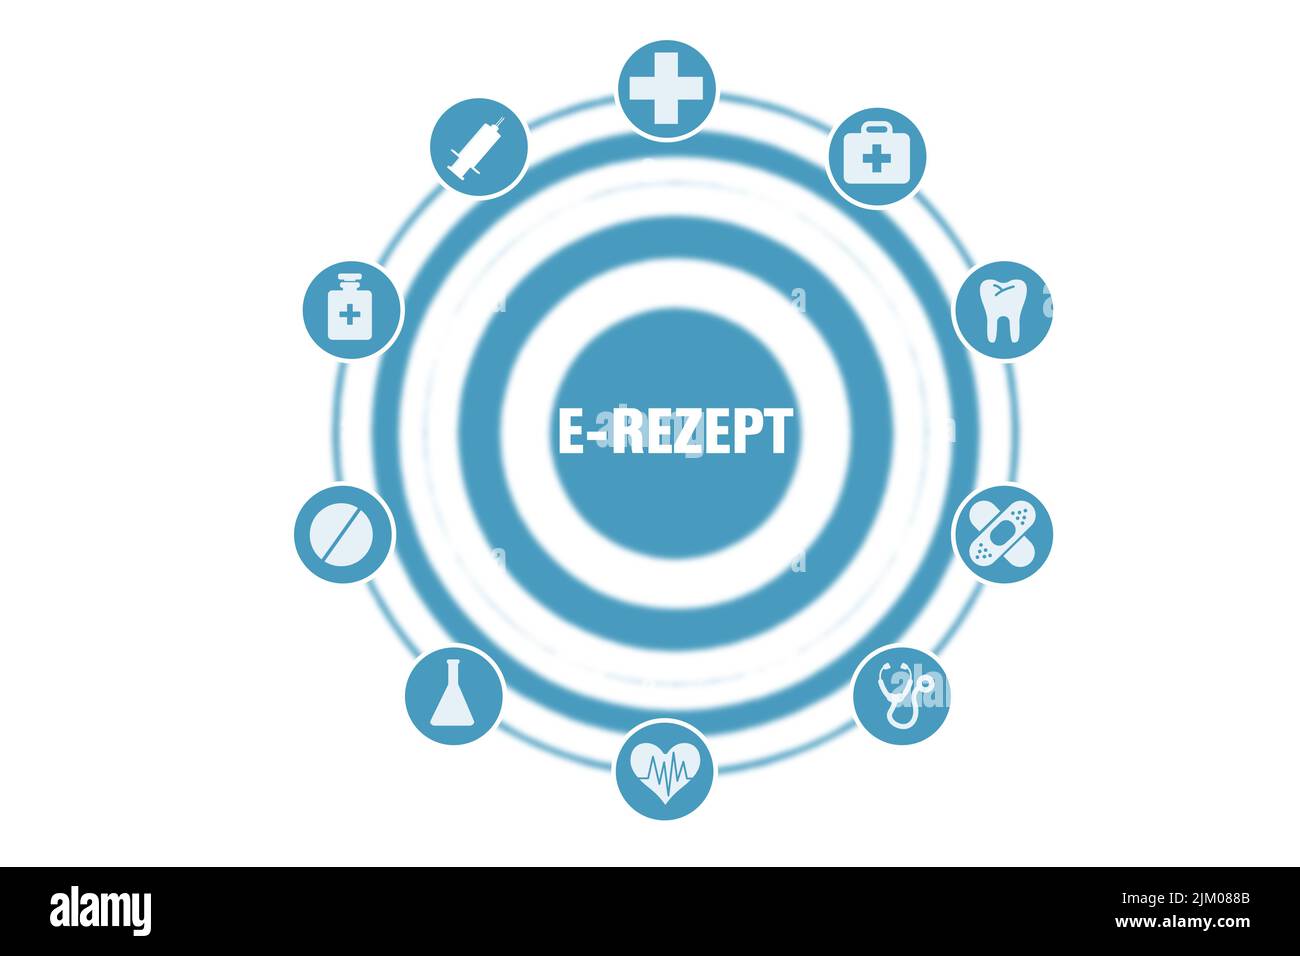 Un'illustrazione della parola tedesca di e-prescription al centro di un cerchio circondato da icone mediche Foto Stock